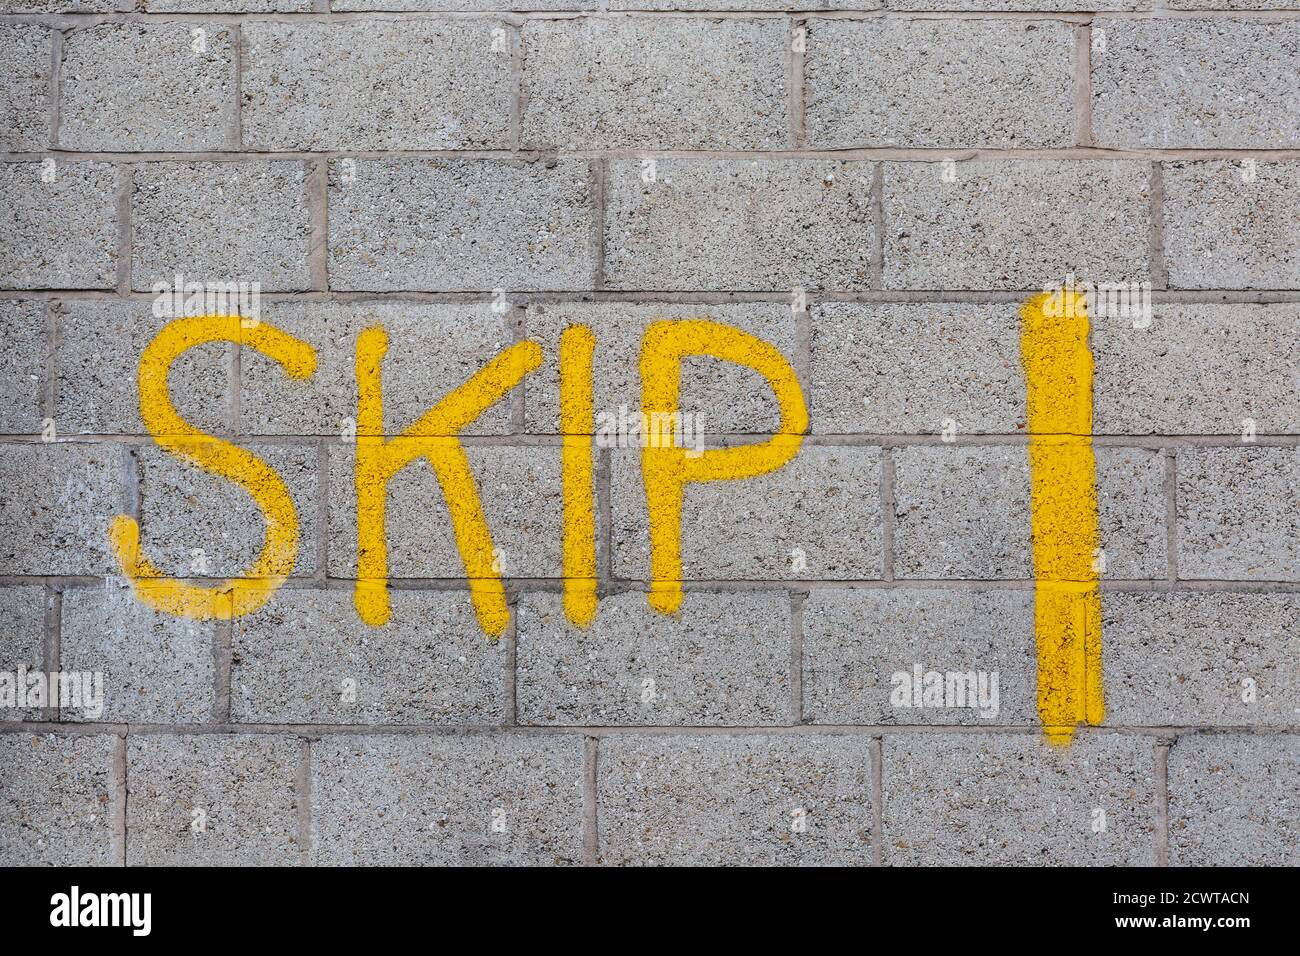 Das Wort SKIP graffisted auf einer Betonblockwand Stockfoto